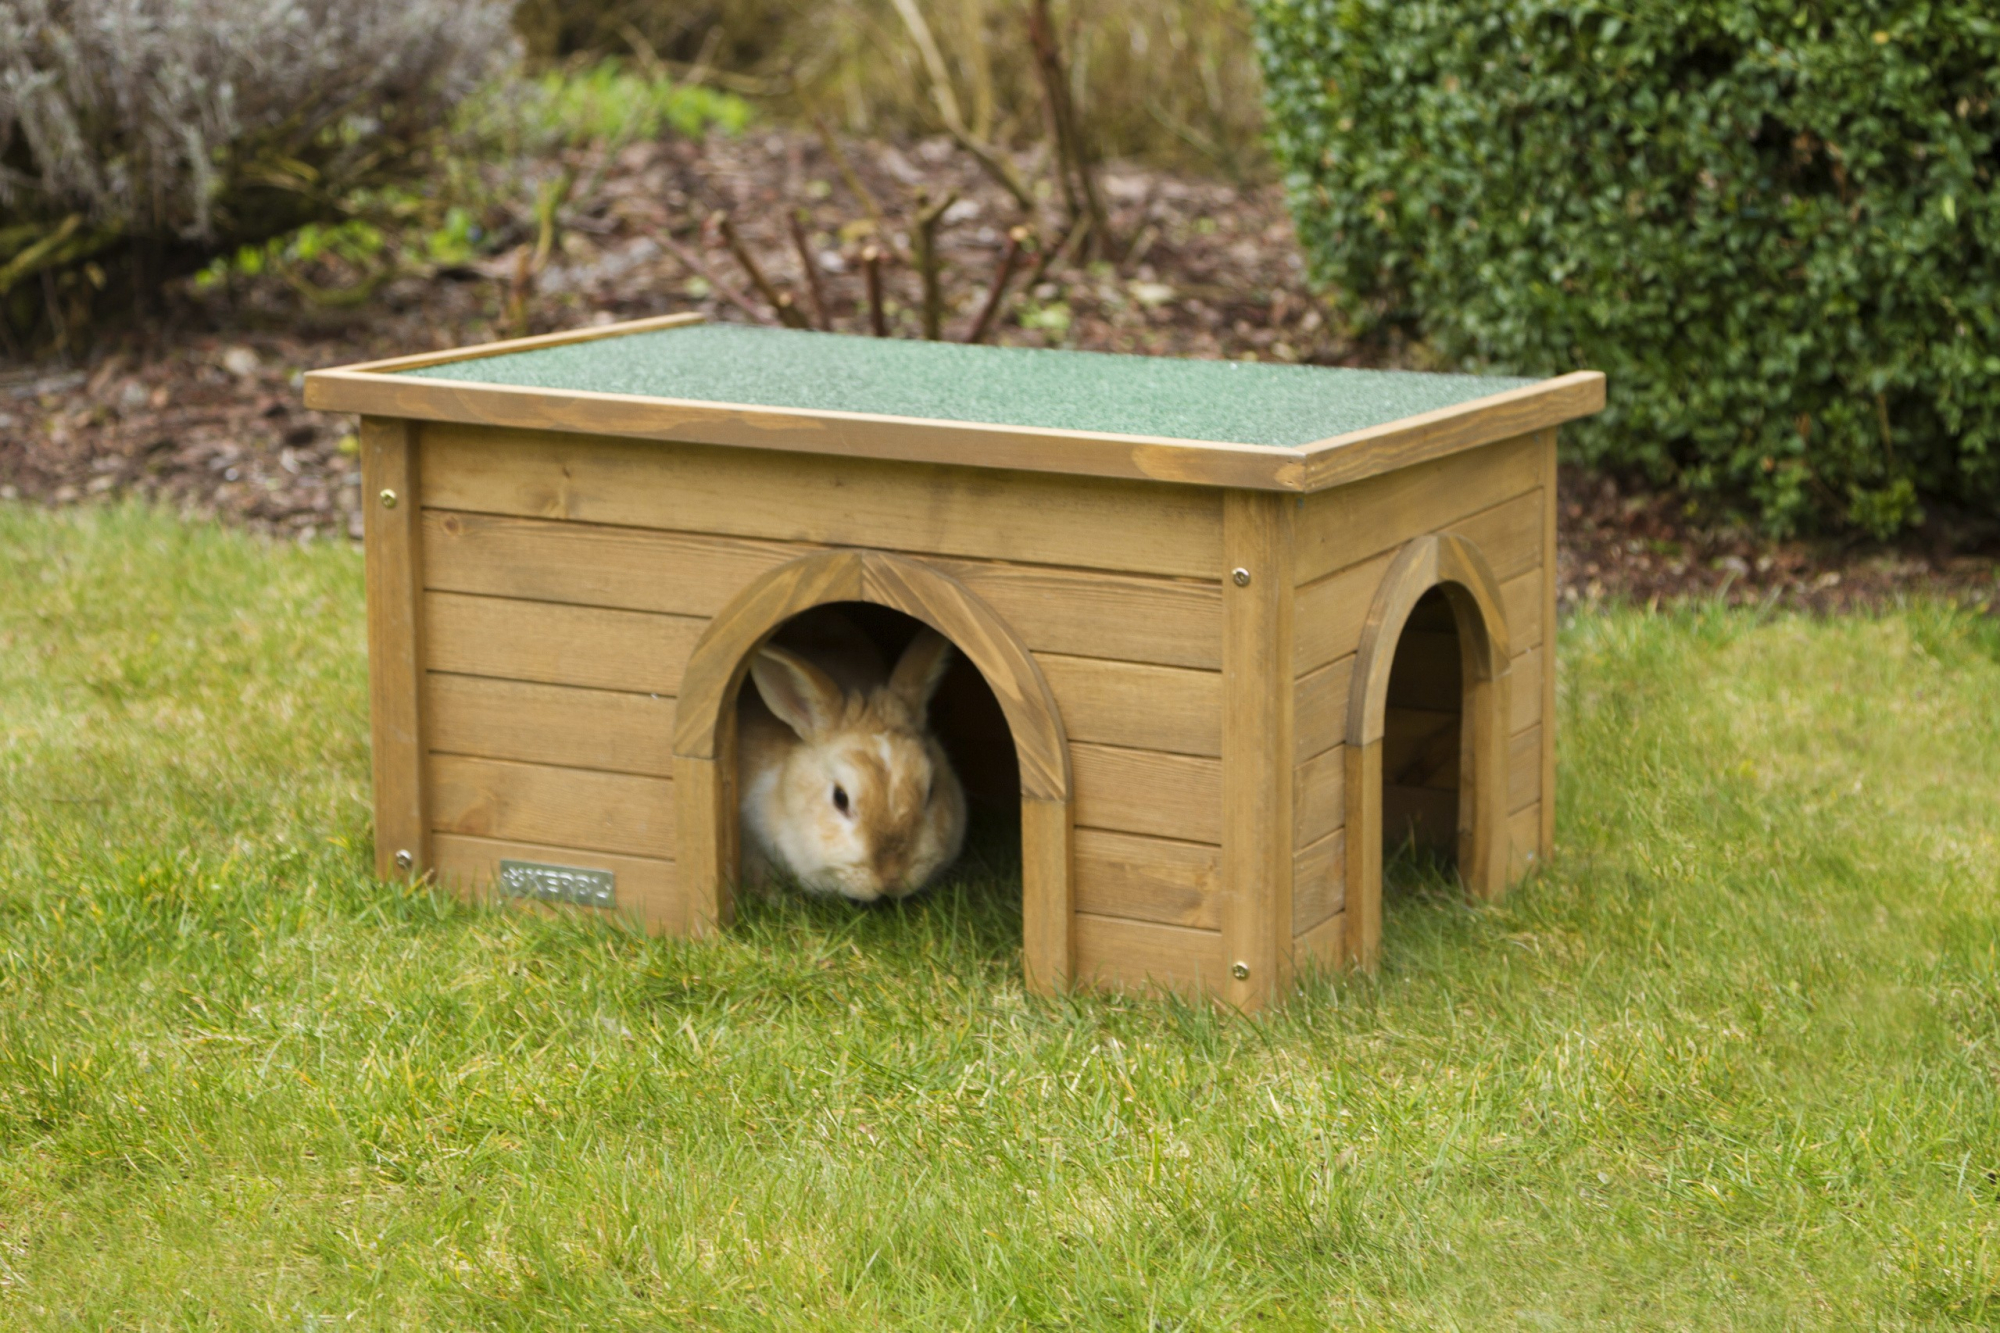 Casa para roedores XL com duas aberturas